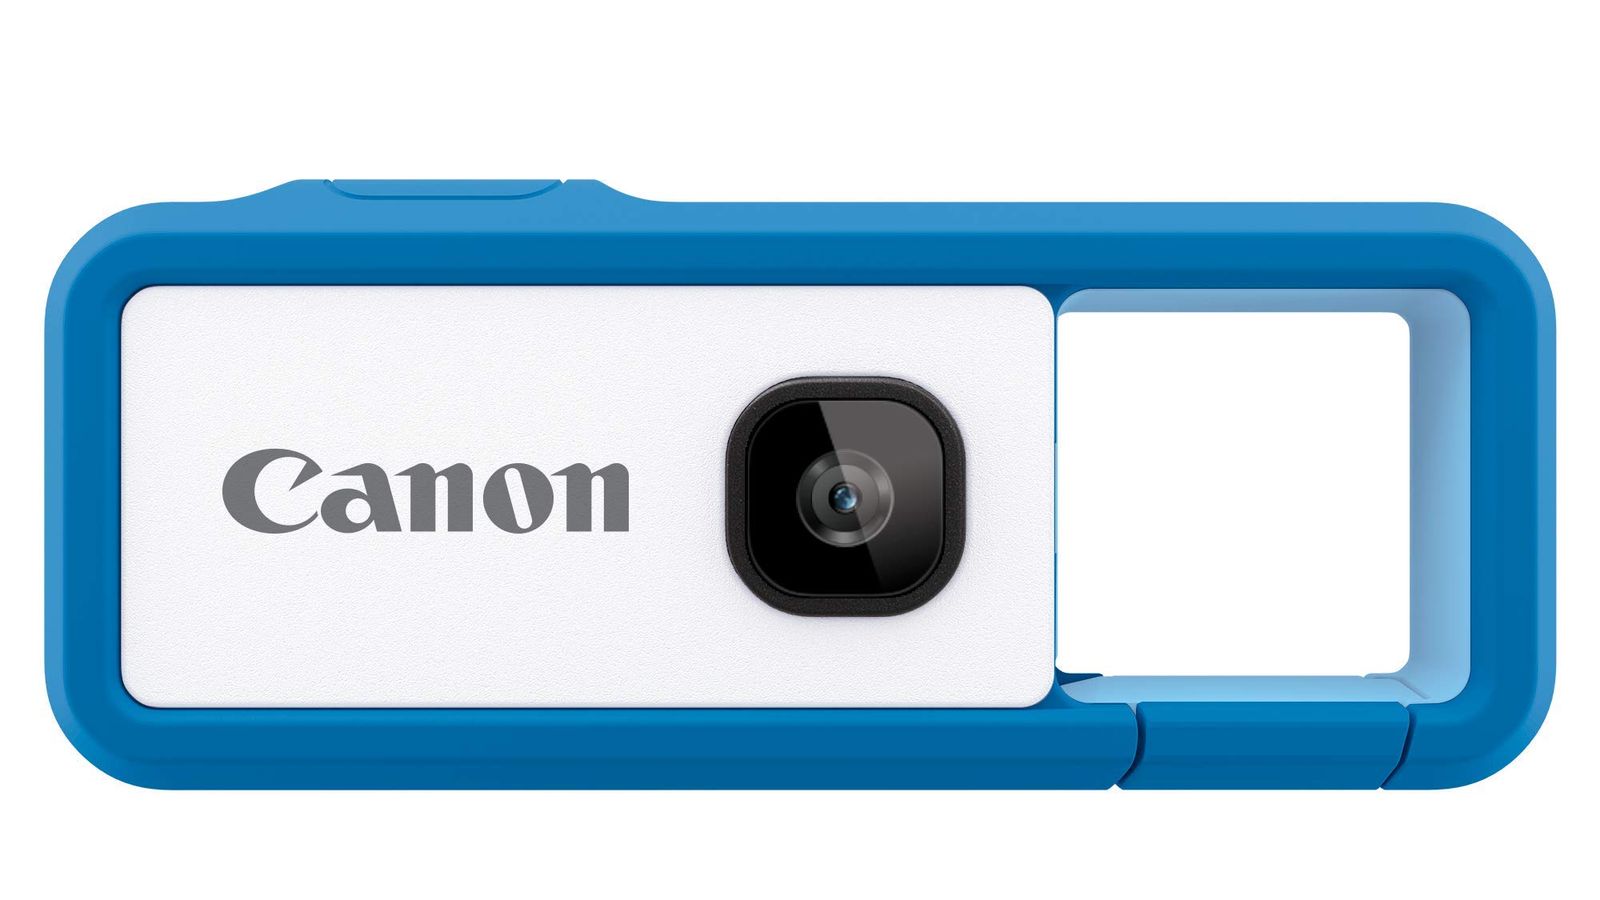 Canon カメラ iNSPiC REC ブルー (小型/防水/耐久) アソビカメラ FV 